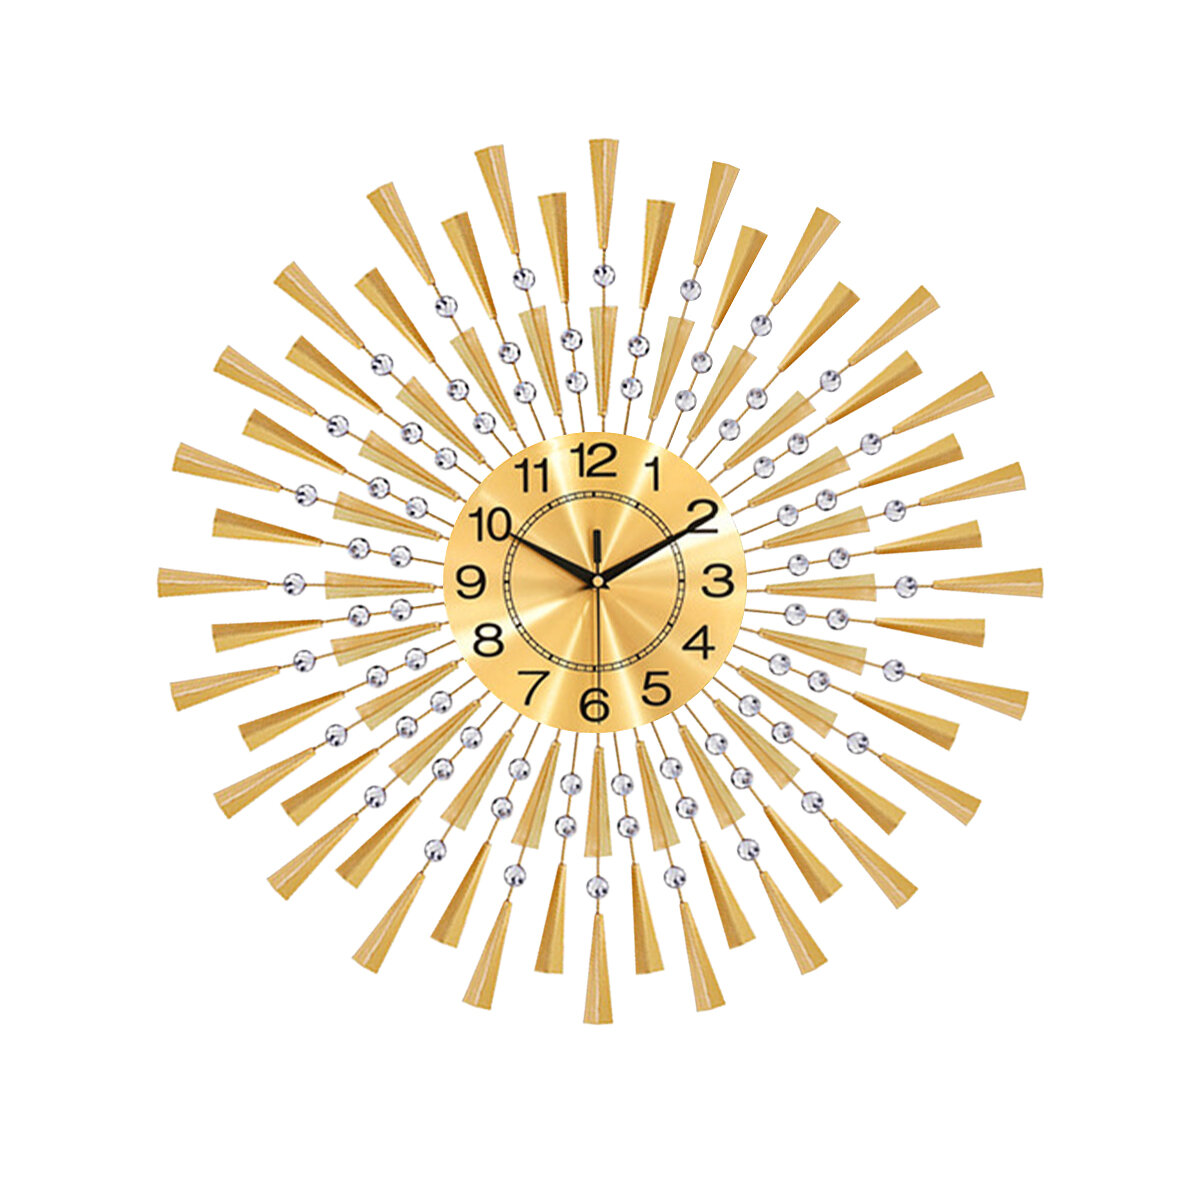 Image of WM310 Black/Gold Iron Wall Clock Geometric Diamond Wall Clock without Battery